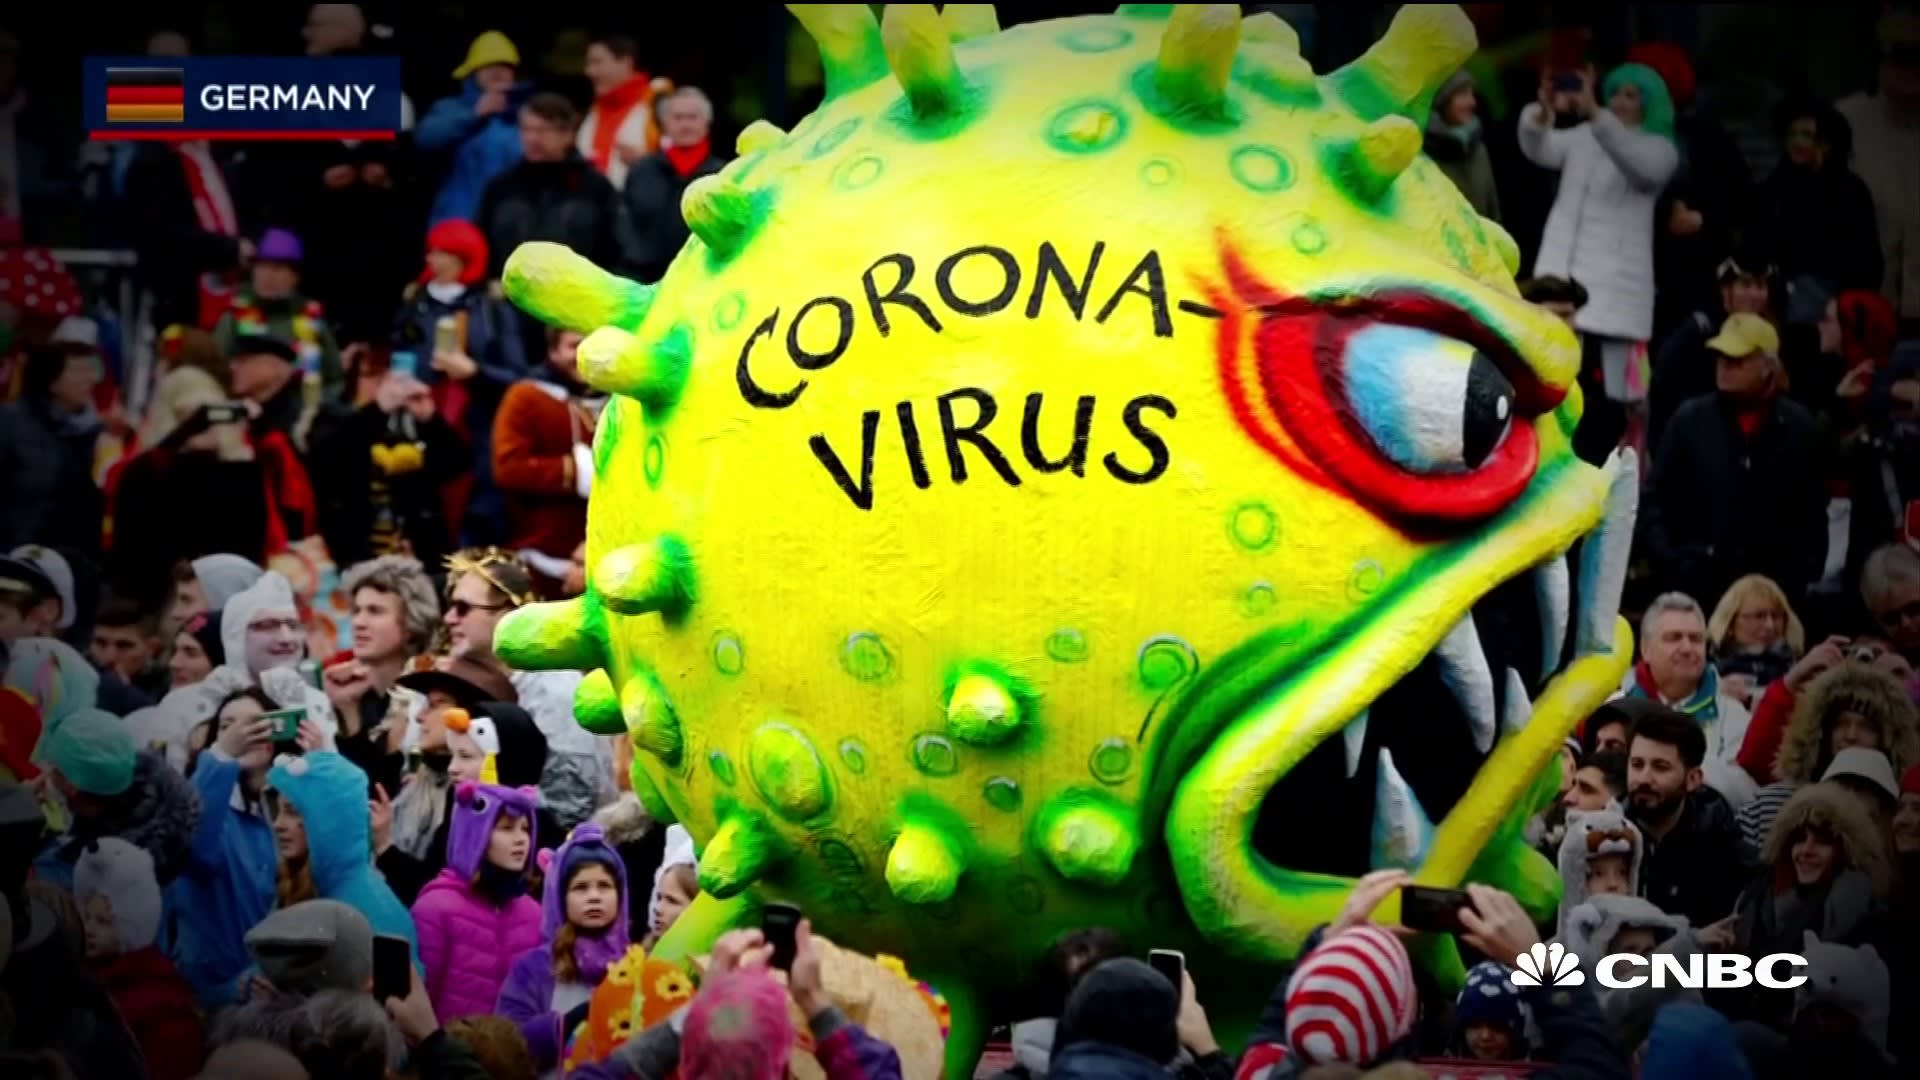 Dramatic Image Related To Coronavirus